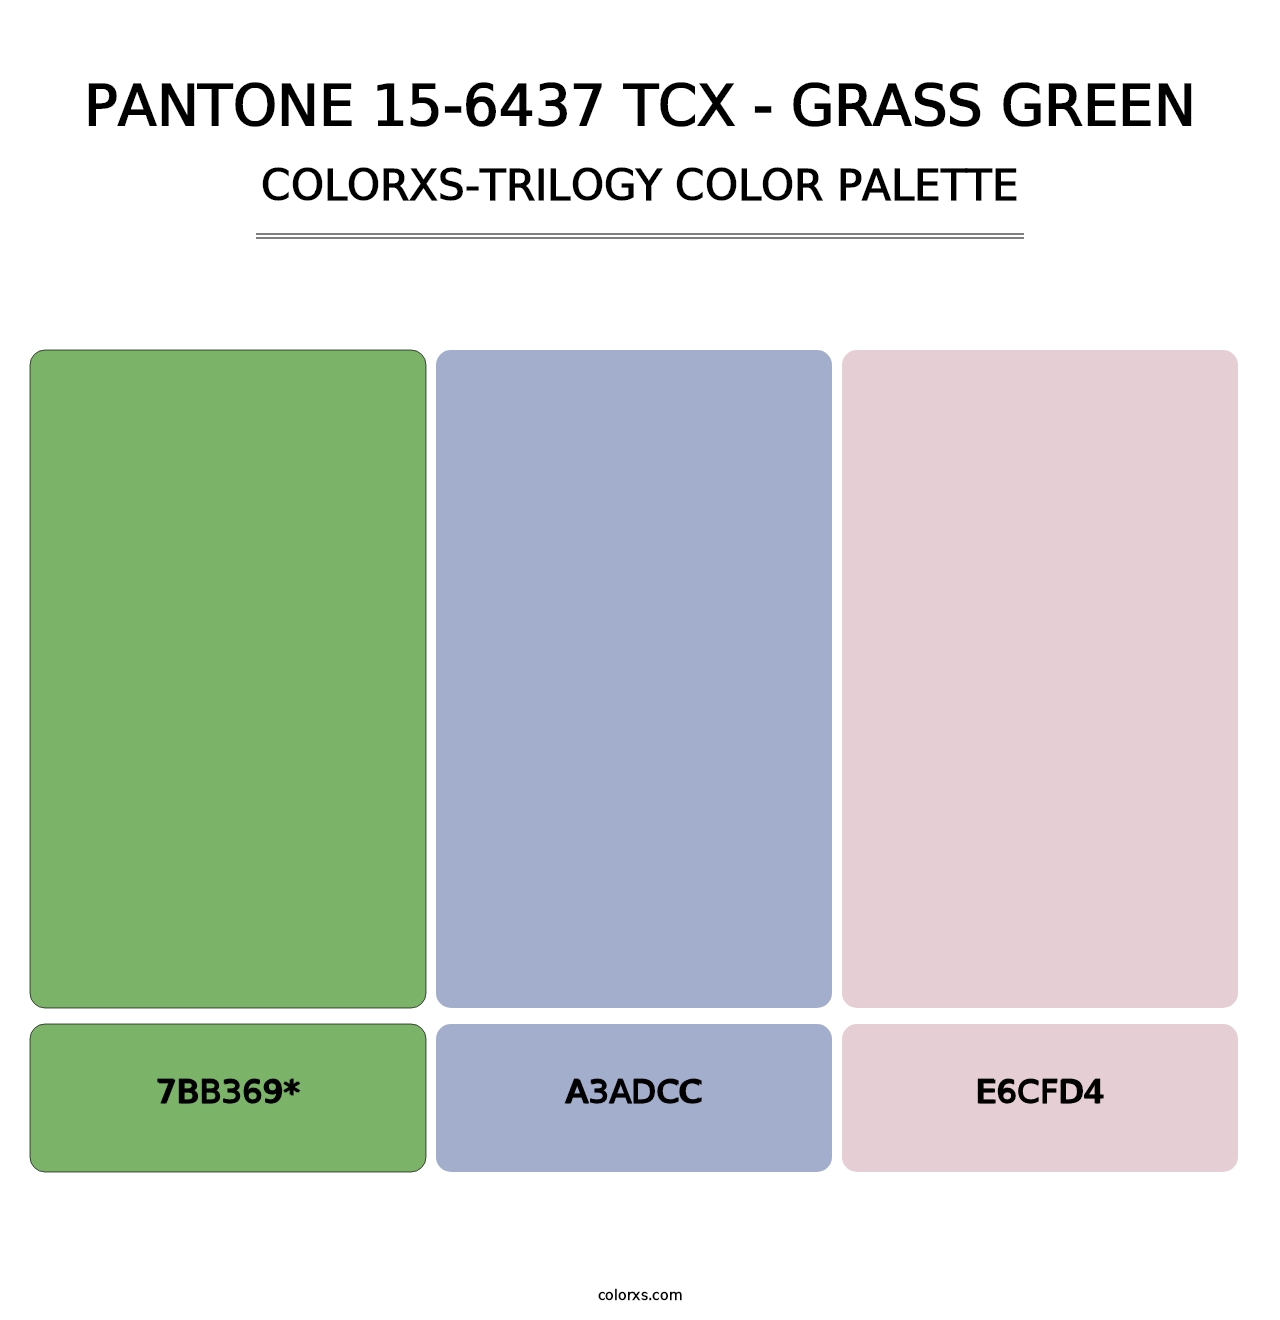 PANTONE 15-6437 TCX - Grass Green - Colorxs Trilogy Palette